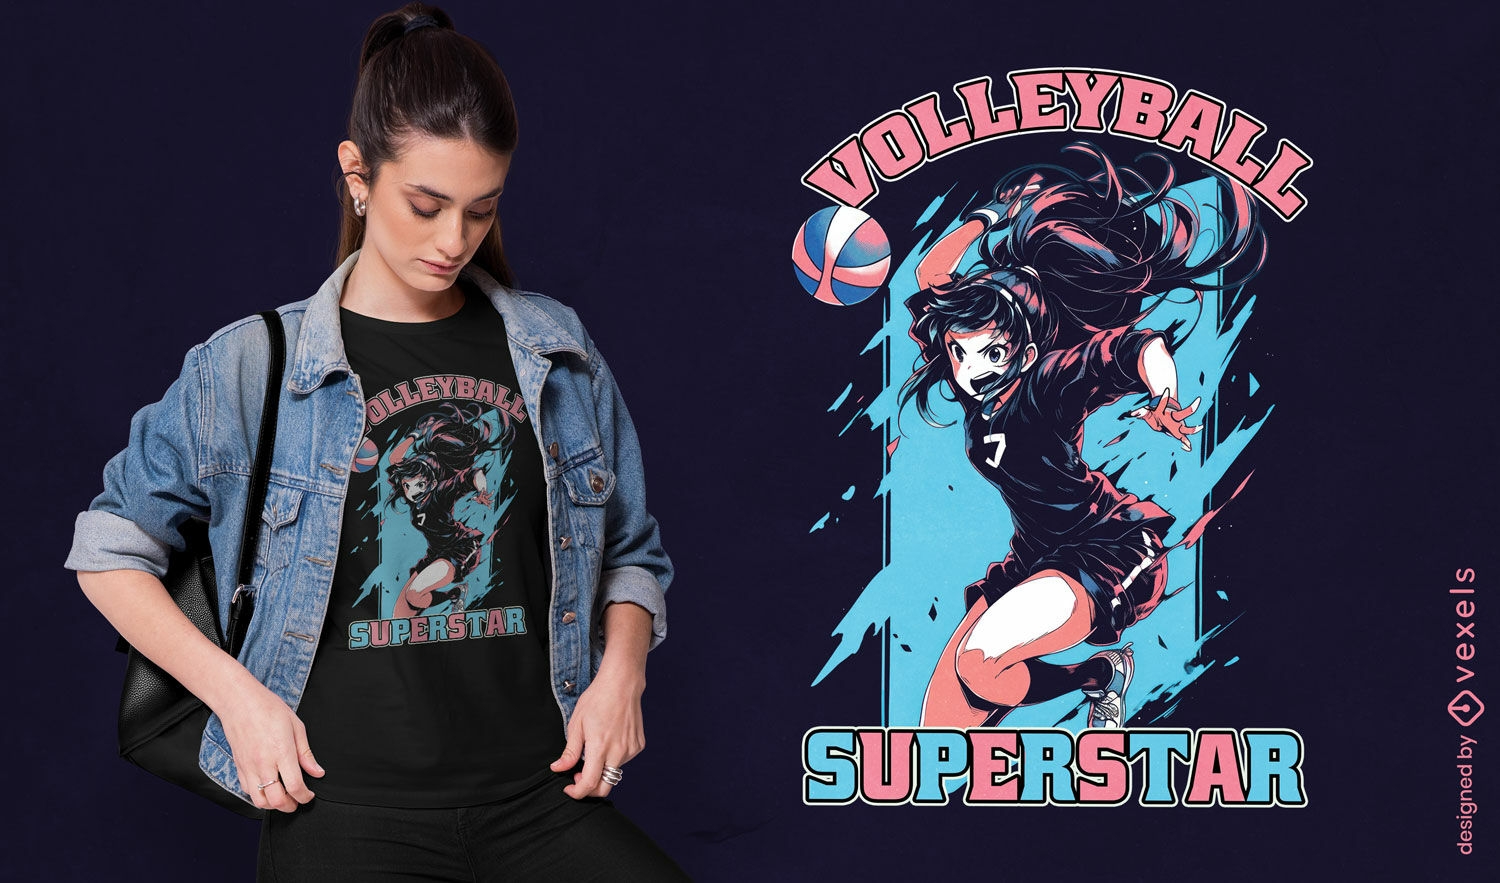 Volleyball superstar t-shirt design